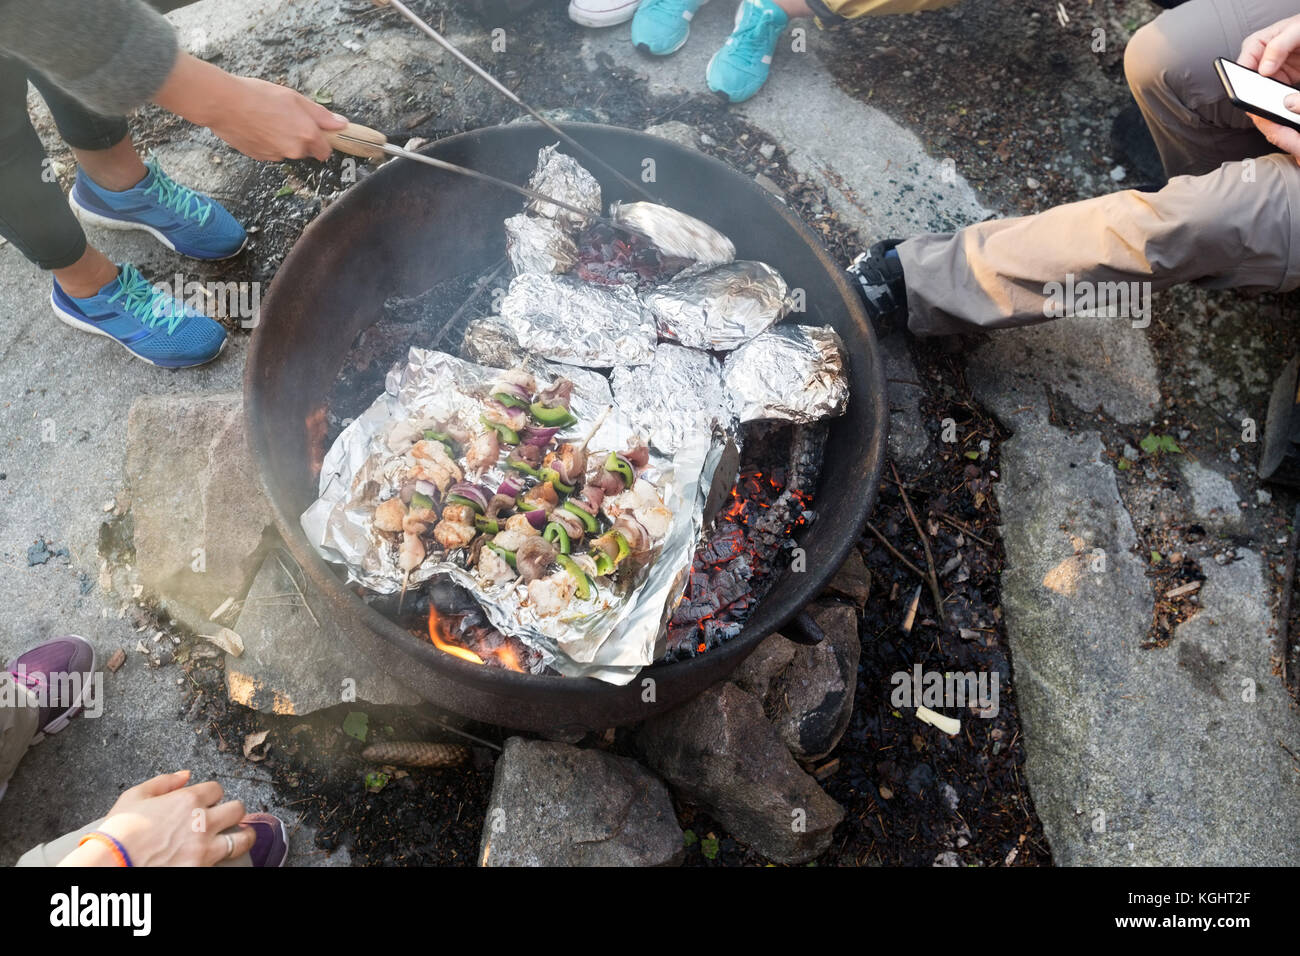 Les amis grilling food en foyer à forêt durant la randonnée Banque D'Images